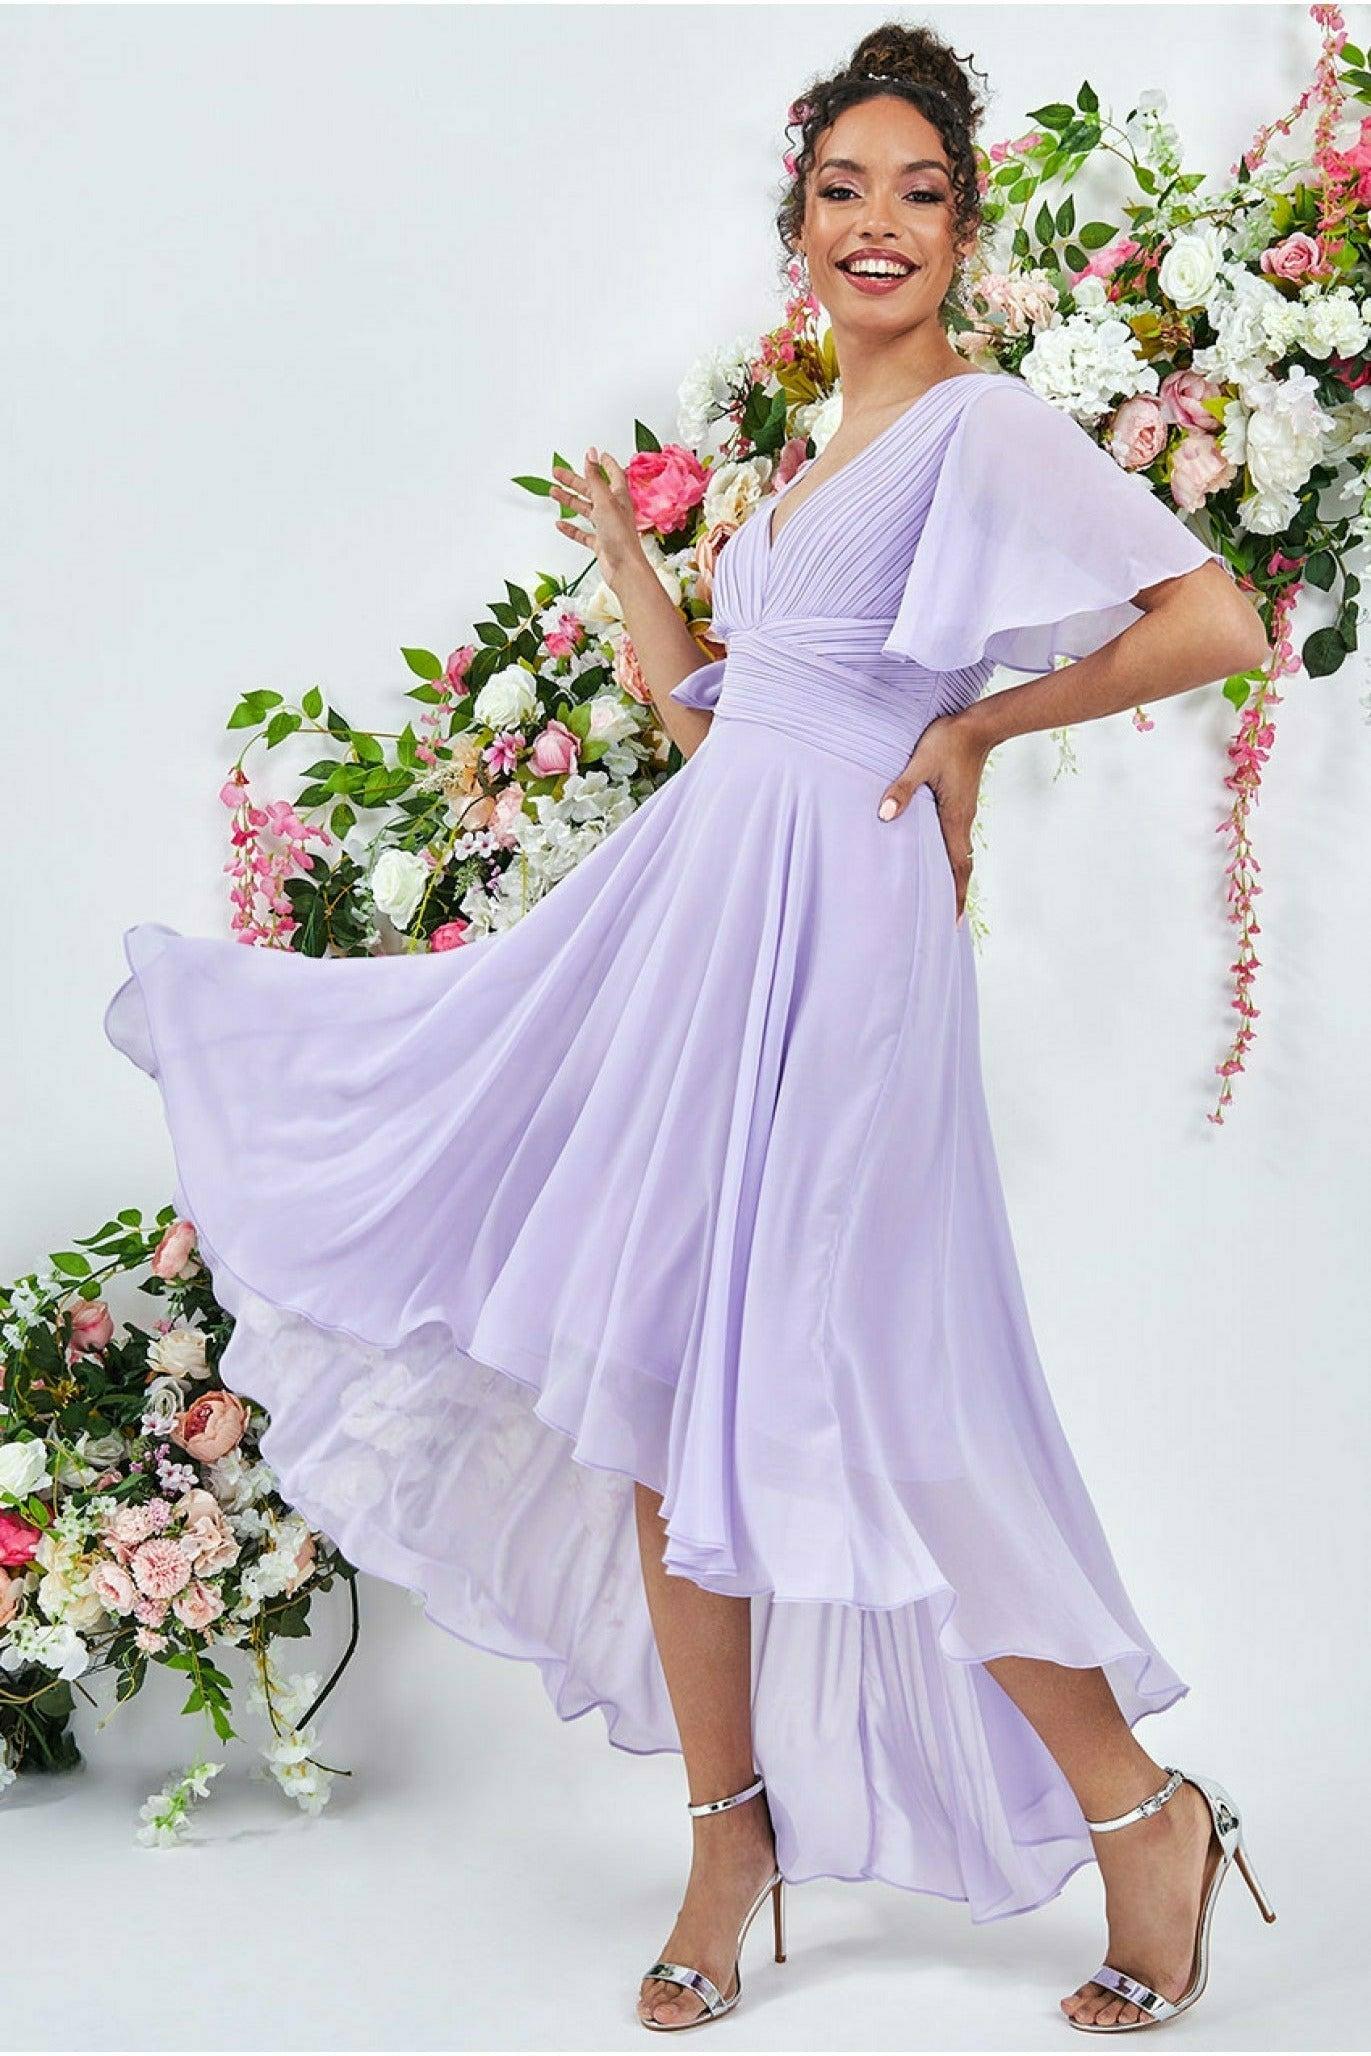 売上最安値 All Day lilac Dress Pleated Long ロングワンピース